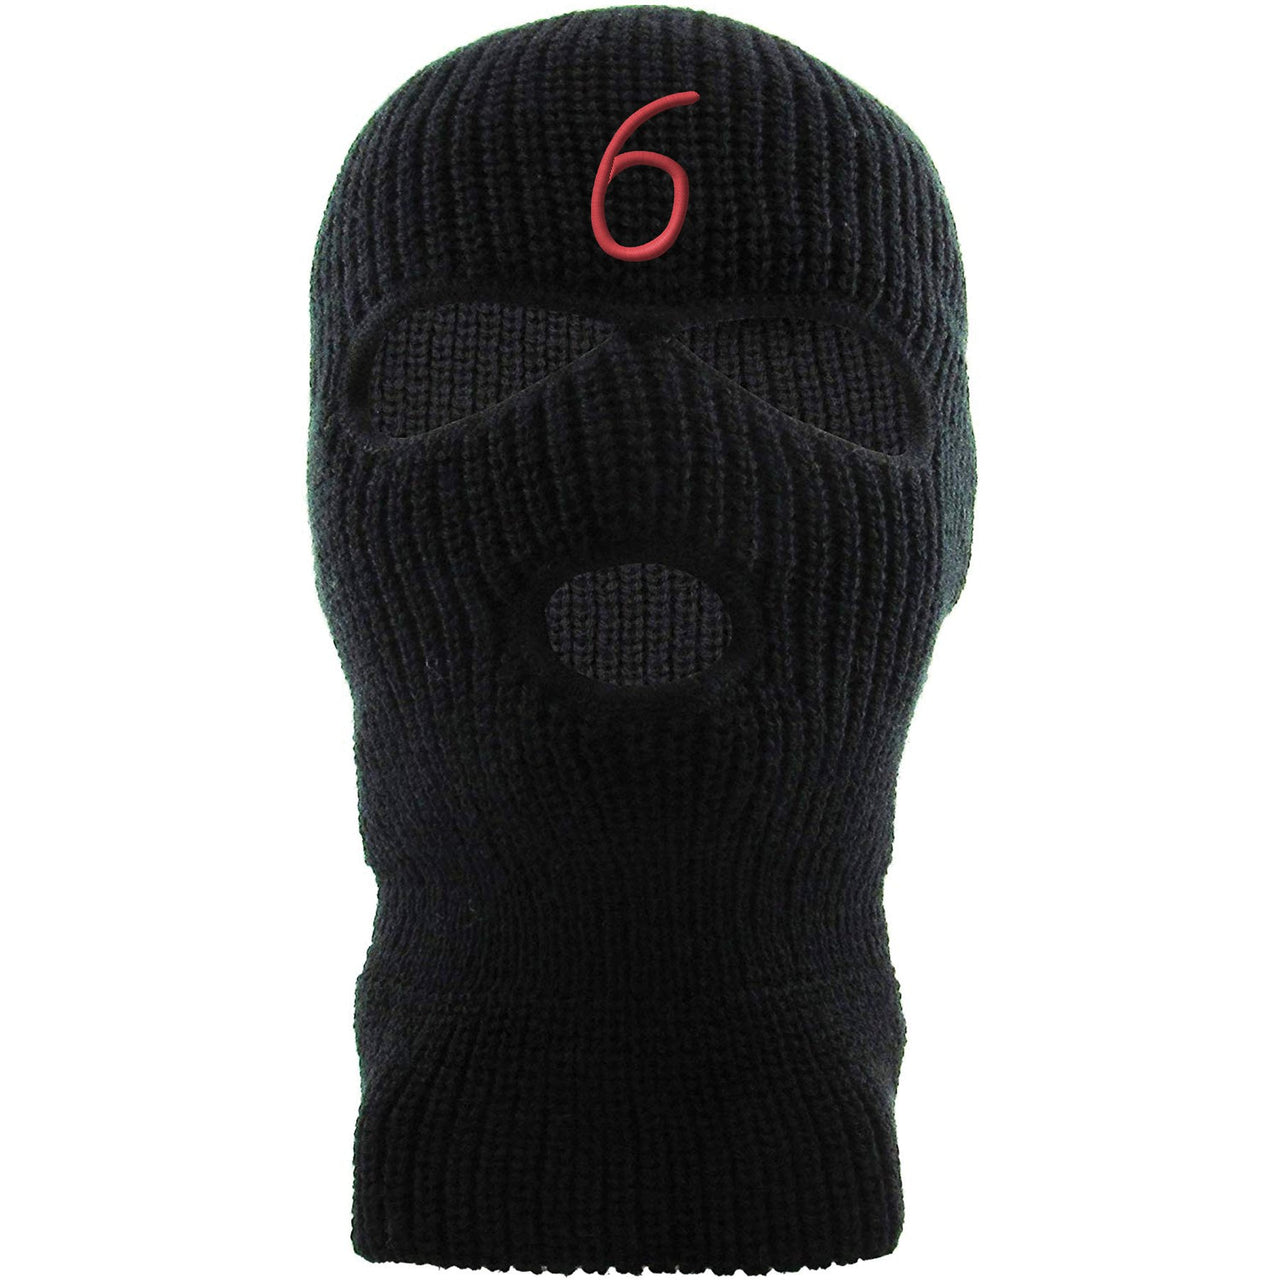 Infrared 6s Ski Mask | 6, Black